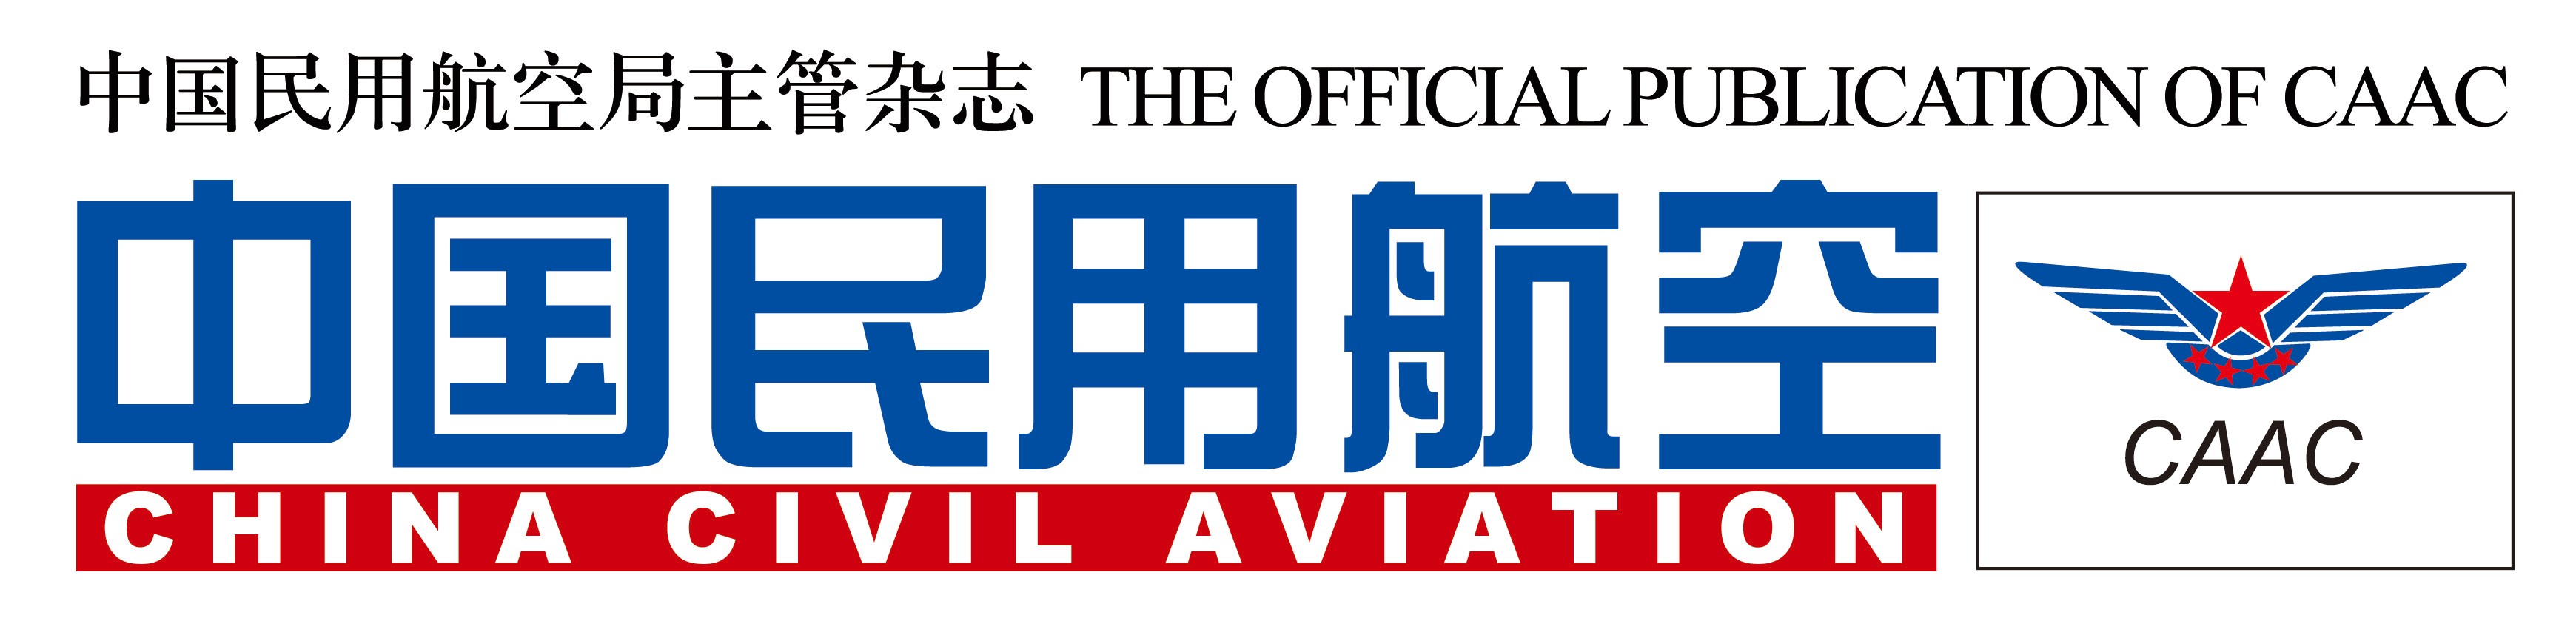 《中国民用航空》杂志